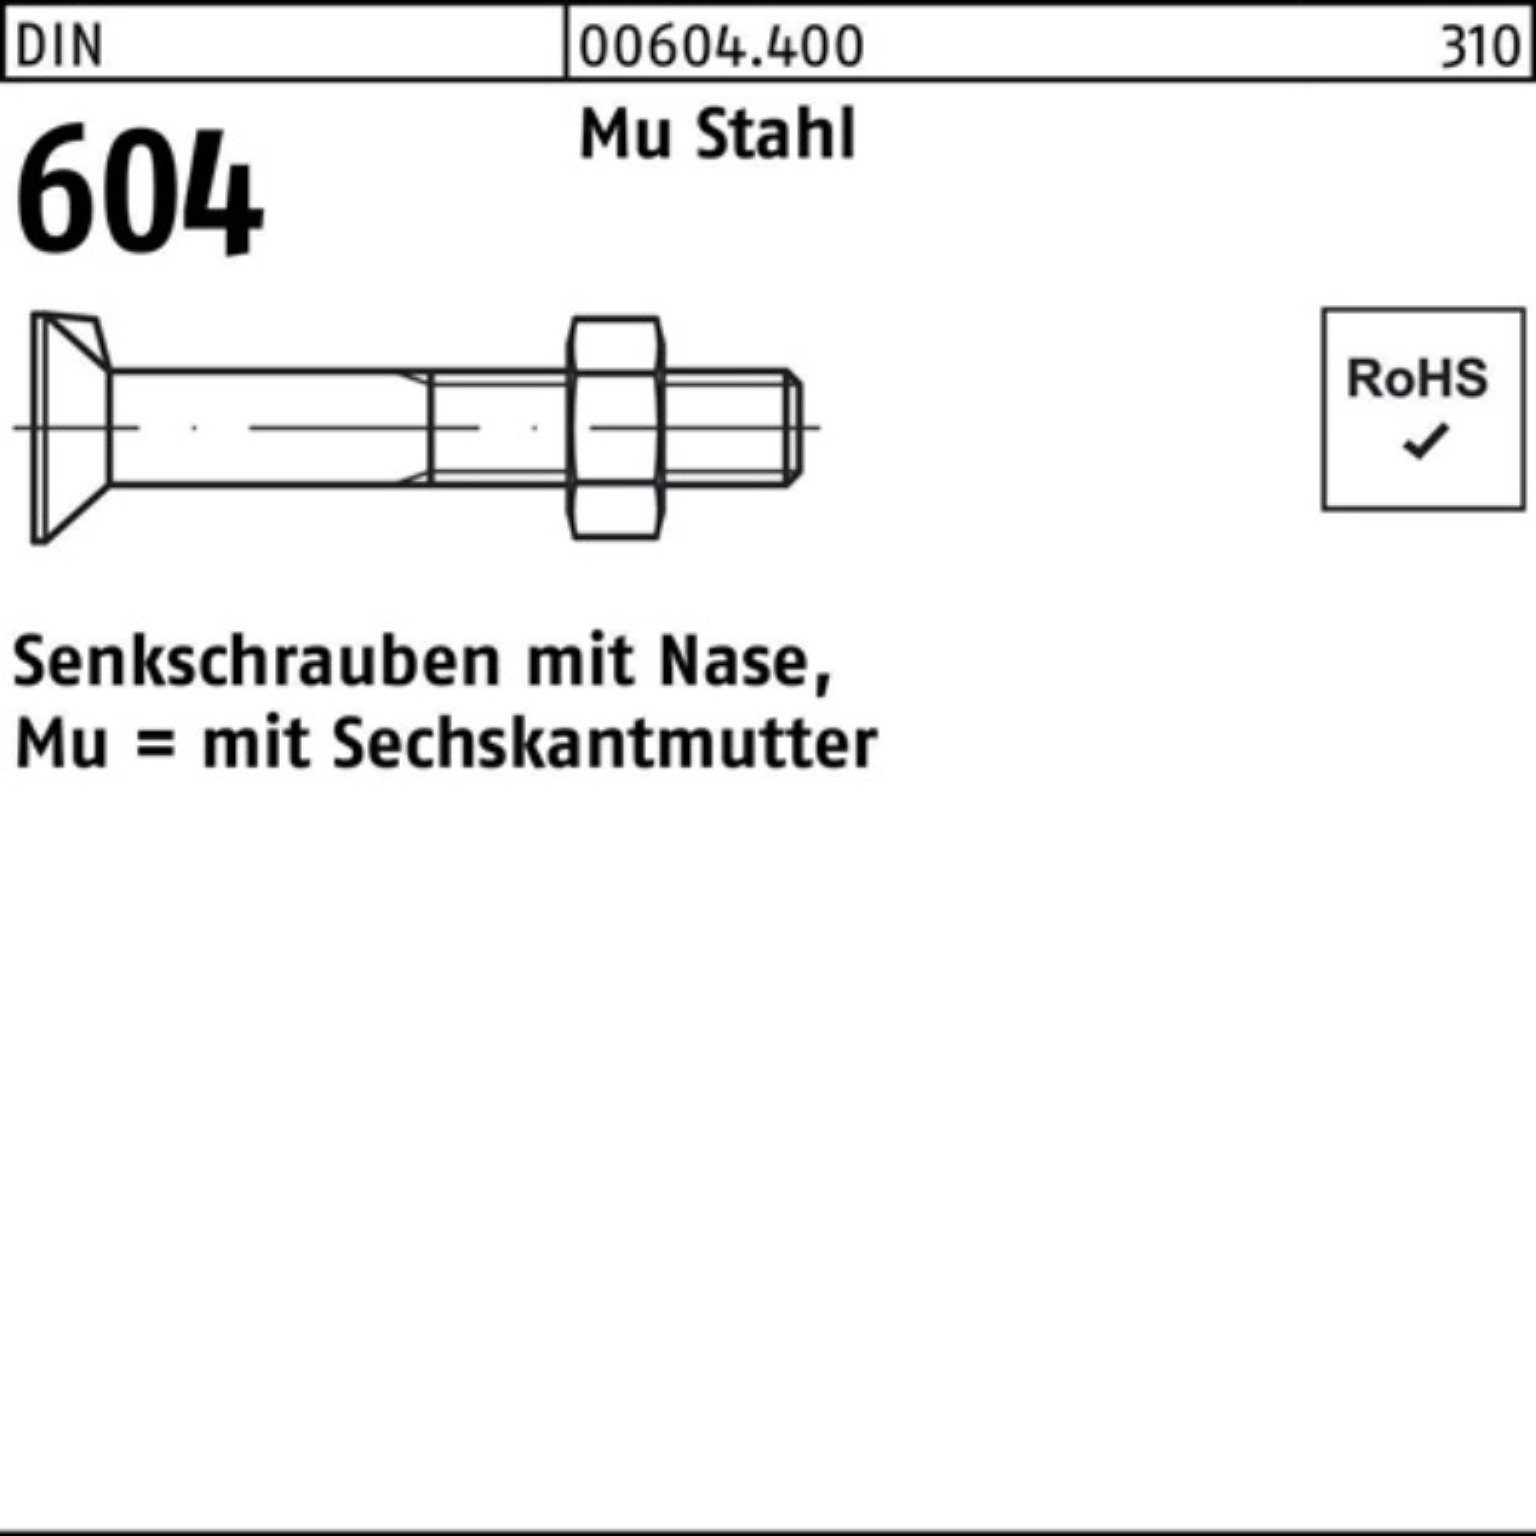 Reyher Senkschraube 100er Pack Senkschraube DIN 604 Nase/6-ktmutter M16x 110 Mu Stahl 4.6